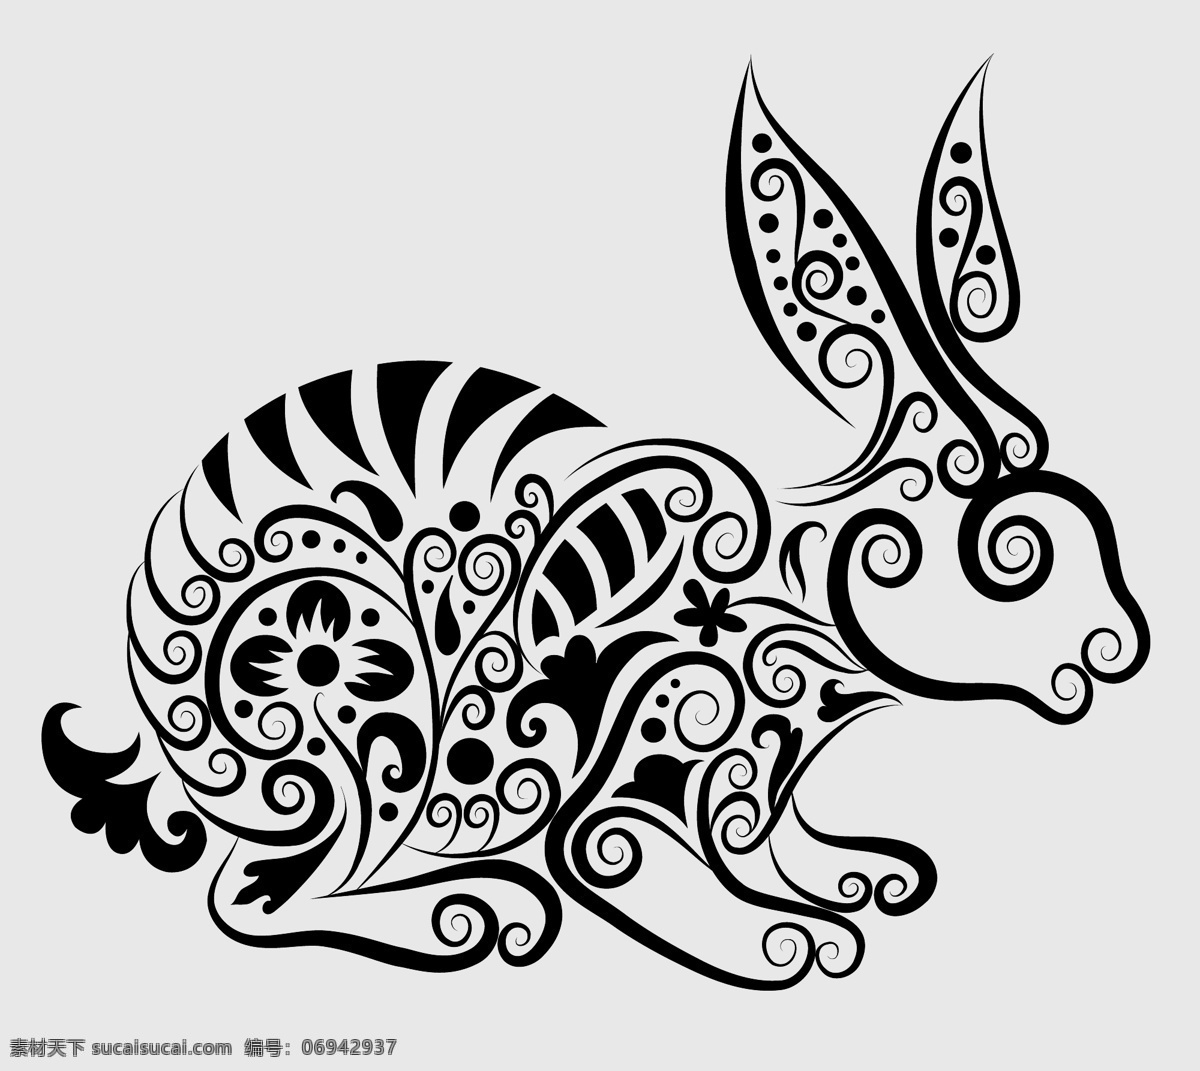 兔子 手绘 图案 刺青 动物 花纹 剪影 矢量素材 图形 纹身 线稿 线条 矢量图 其他矢量图